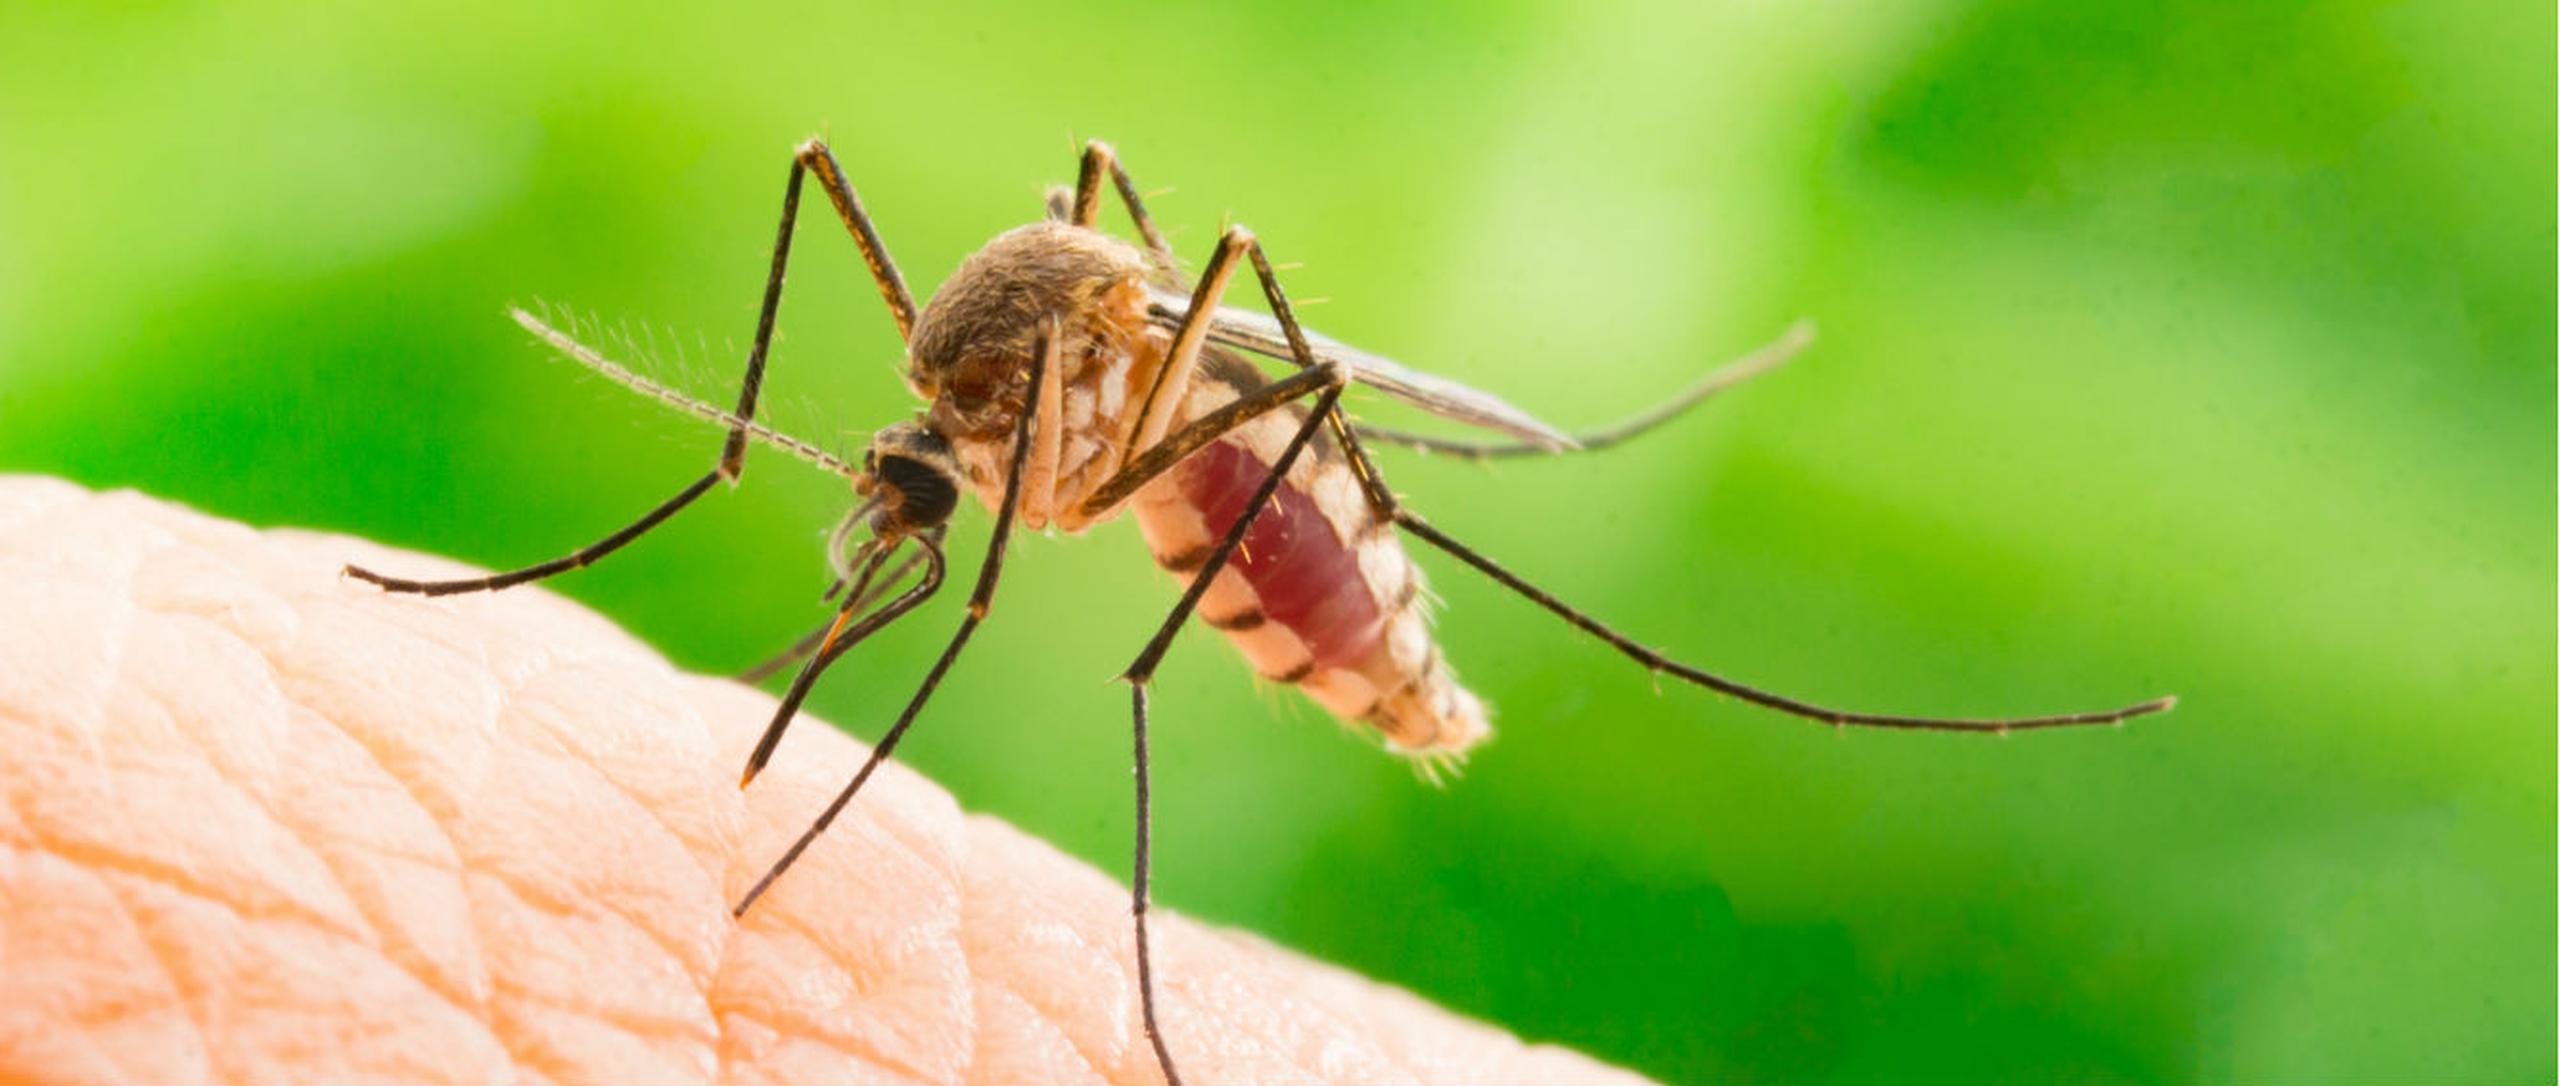 La herramienta desarrollada ofrece nuevas oportunidades para estudiar ciertas proteínas y determinar si se pueden dirigir para bloquear la transmisión de la malaria. (Shutterstock)